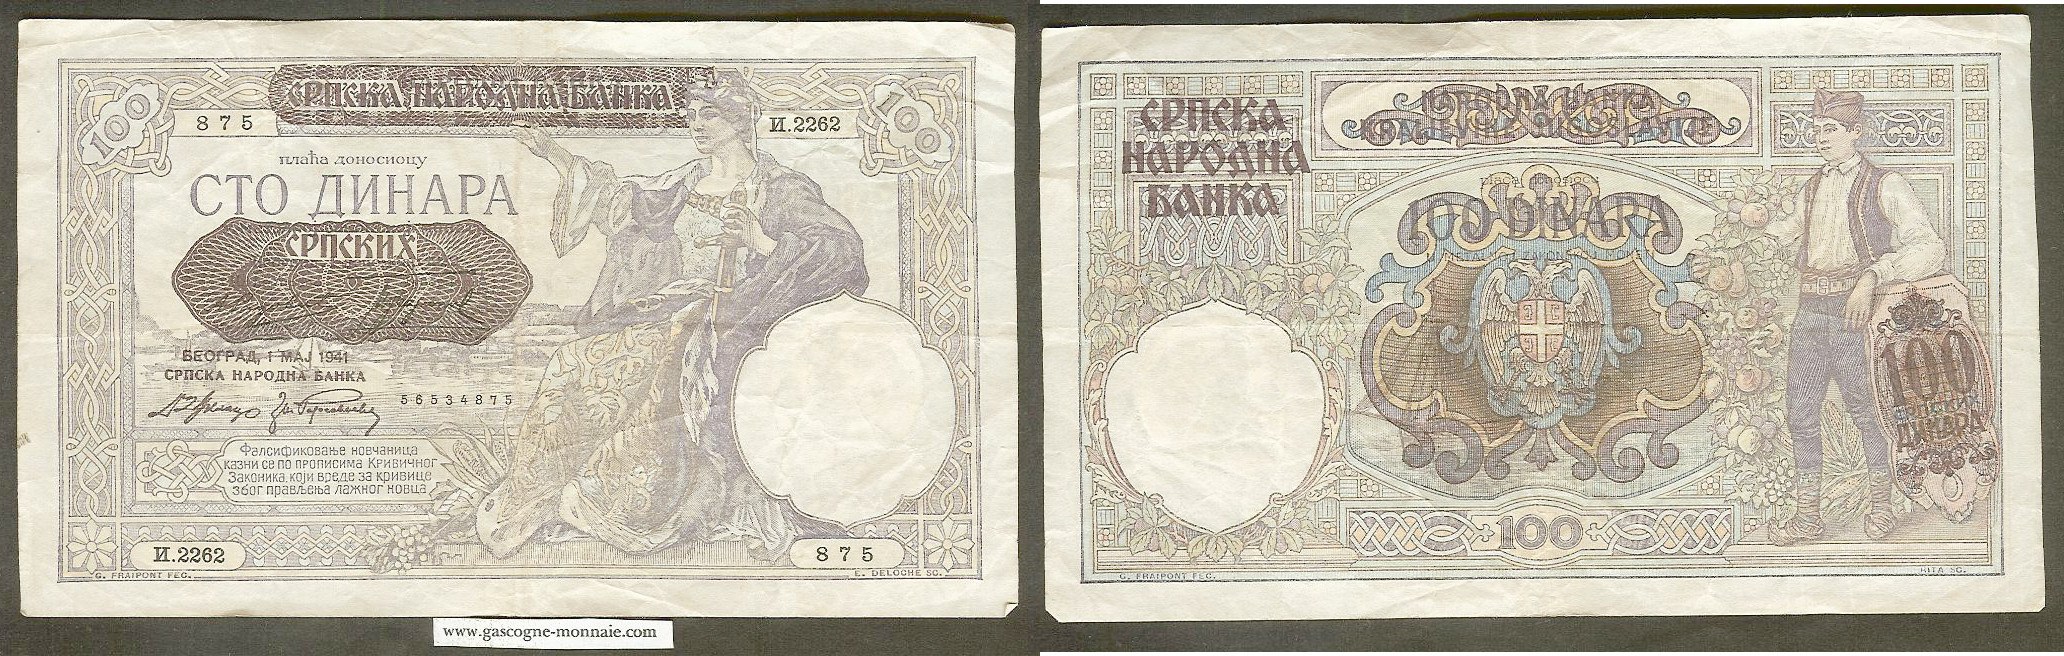 Serbia 100 dinar 1941 aVF